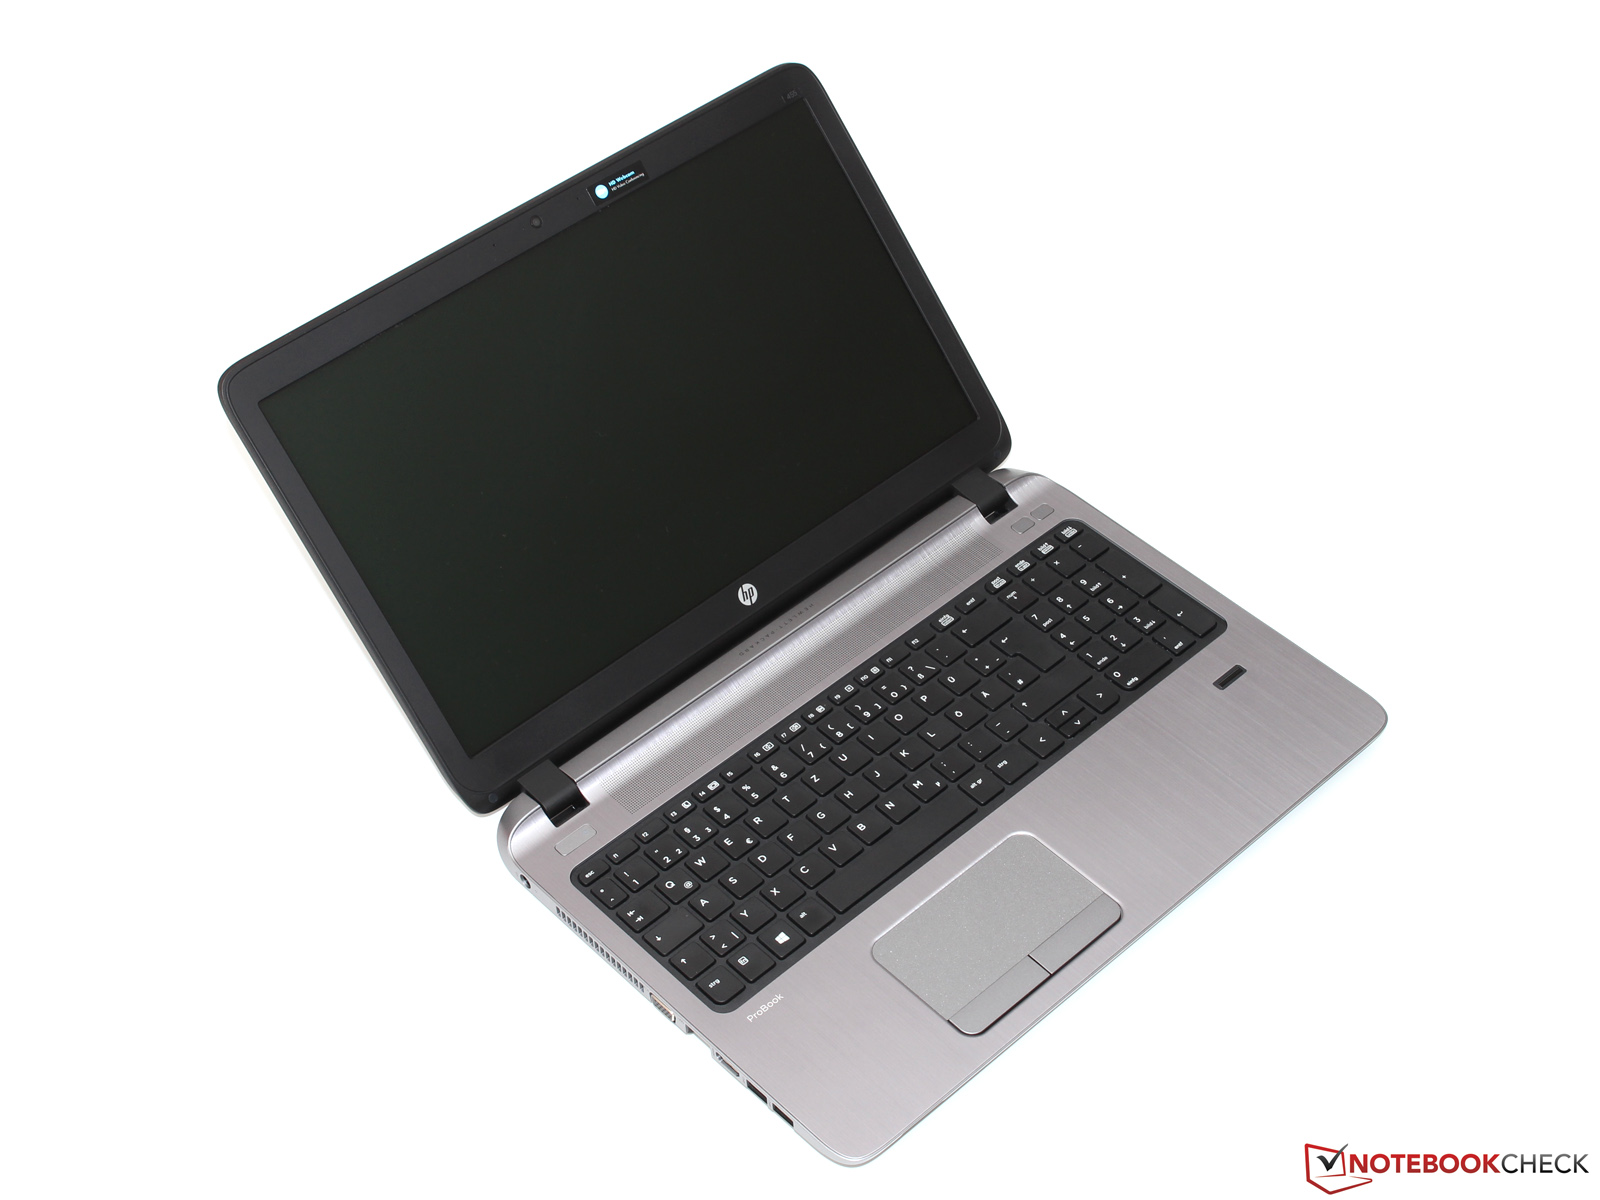 ProBook 645 G1 Notebook PC